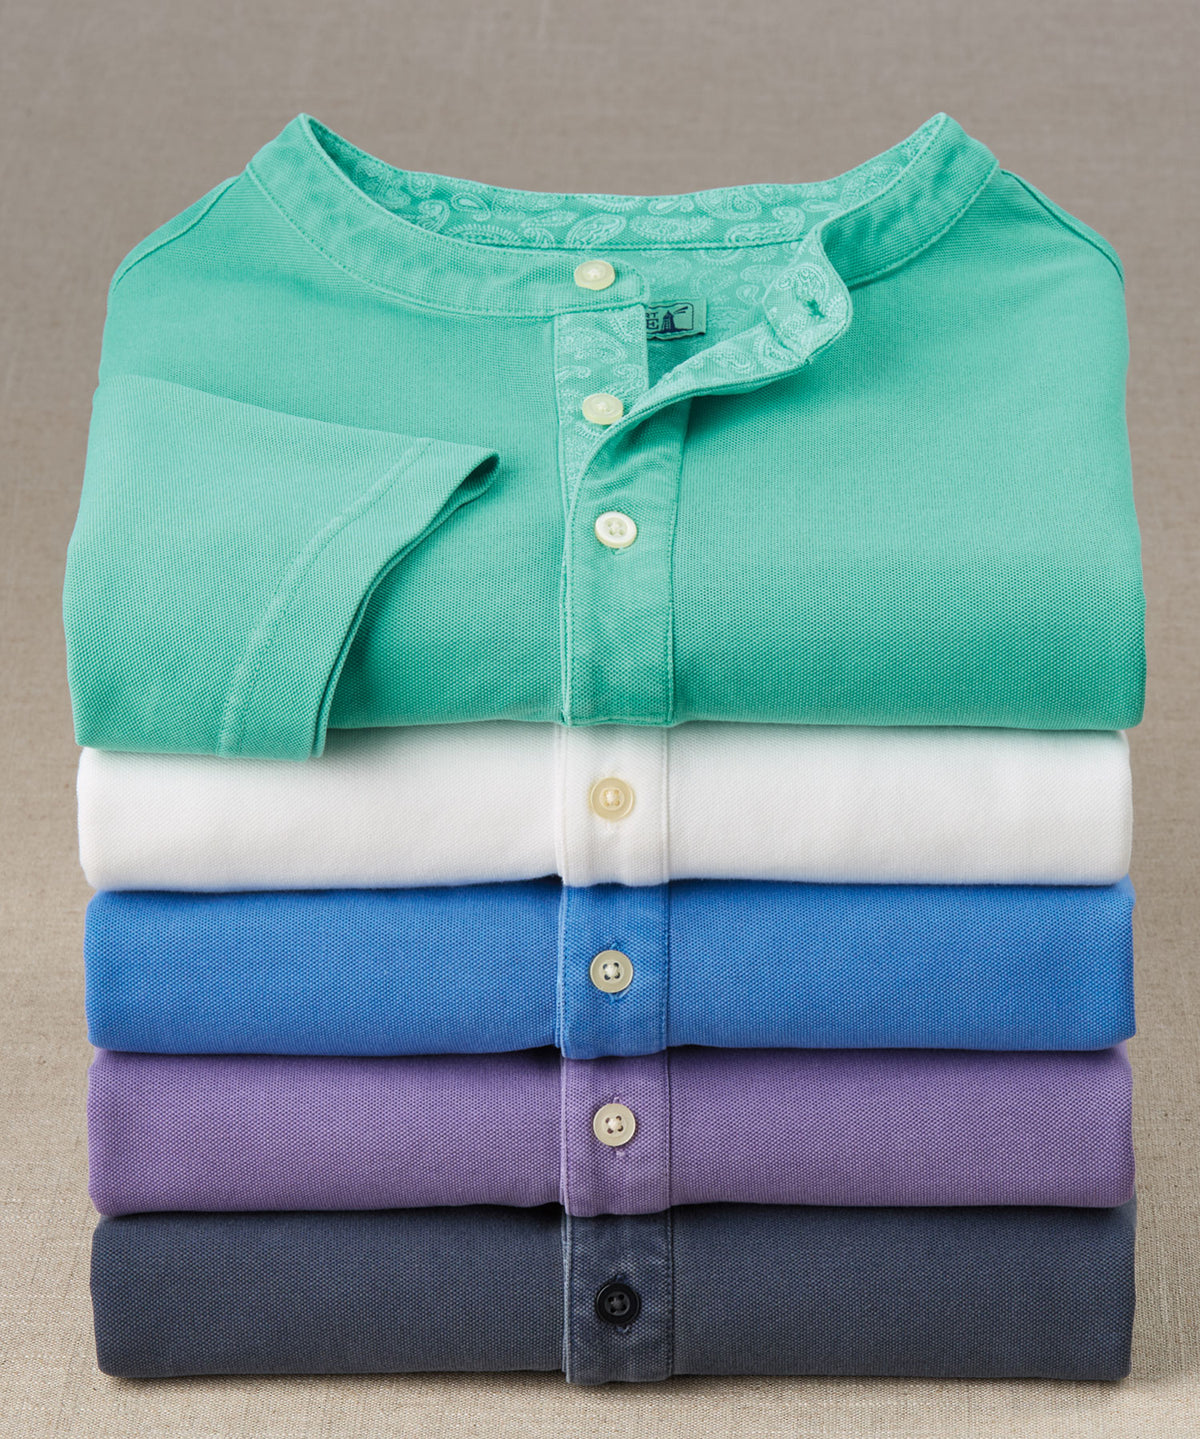 Westport Lifestyle Short Sleeve Garment Dyed Pique Henley Knit Shirt, Men's Big & Tall